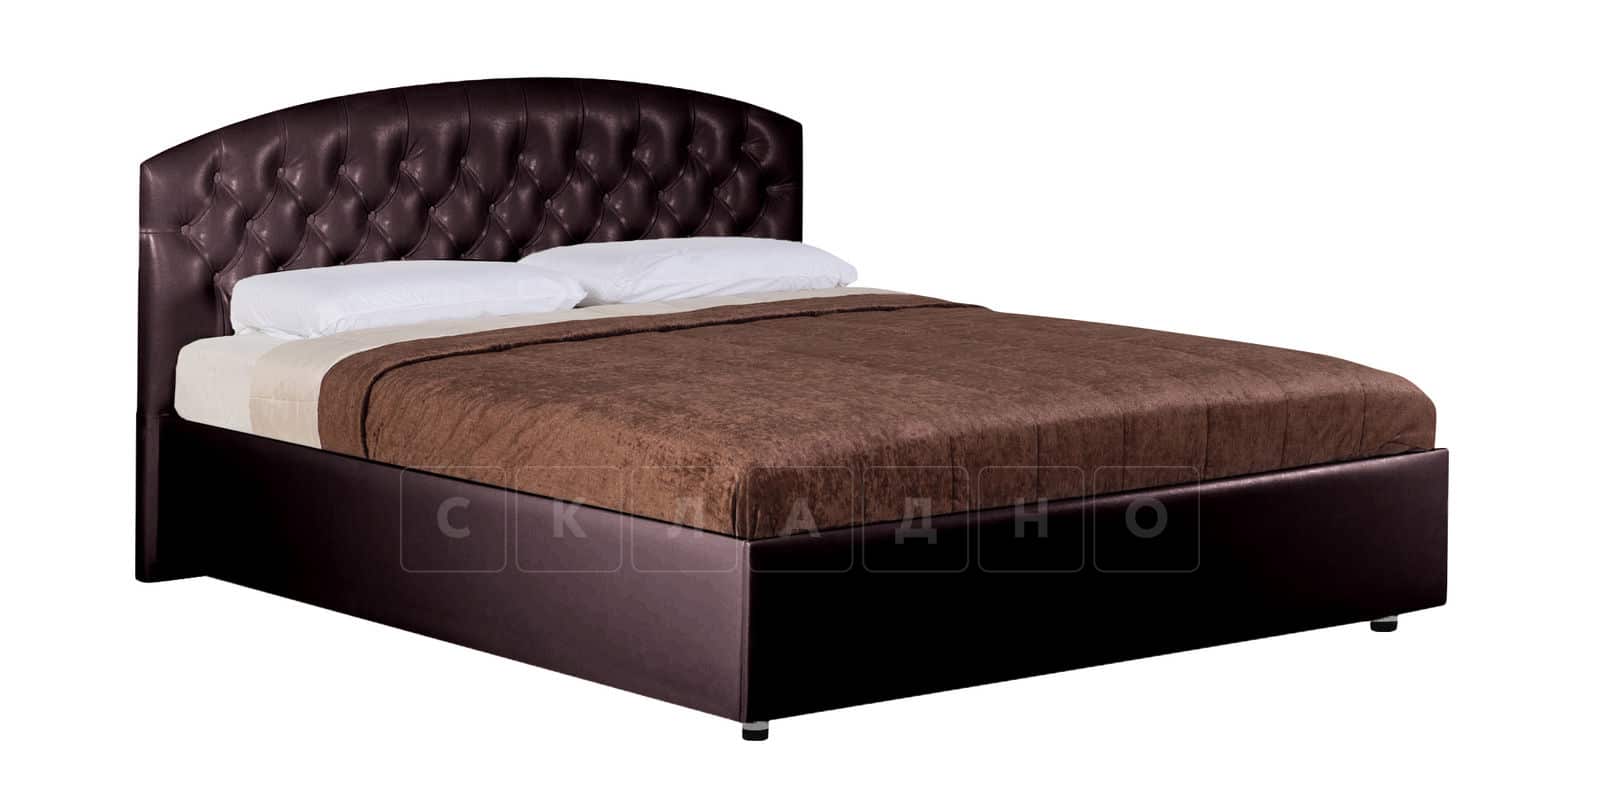 Мягкая кровать Малибу 160см экокожа шоколадного цвета вариант 1 фото 3 | интернет-магазин Складно